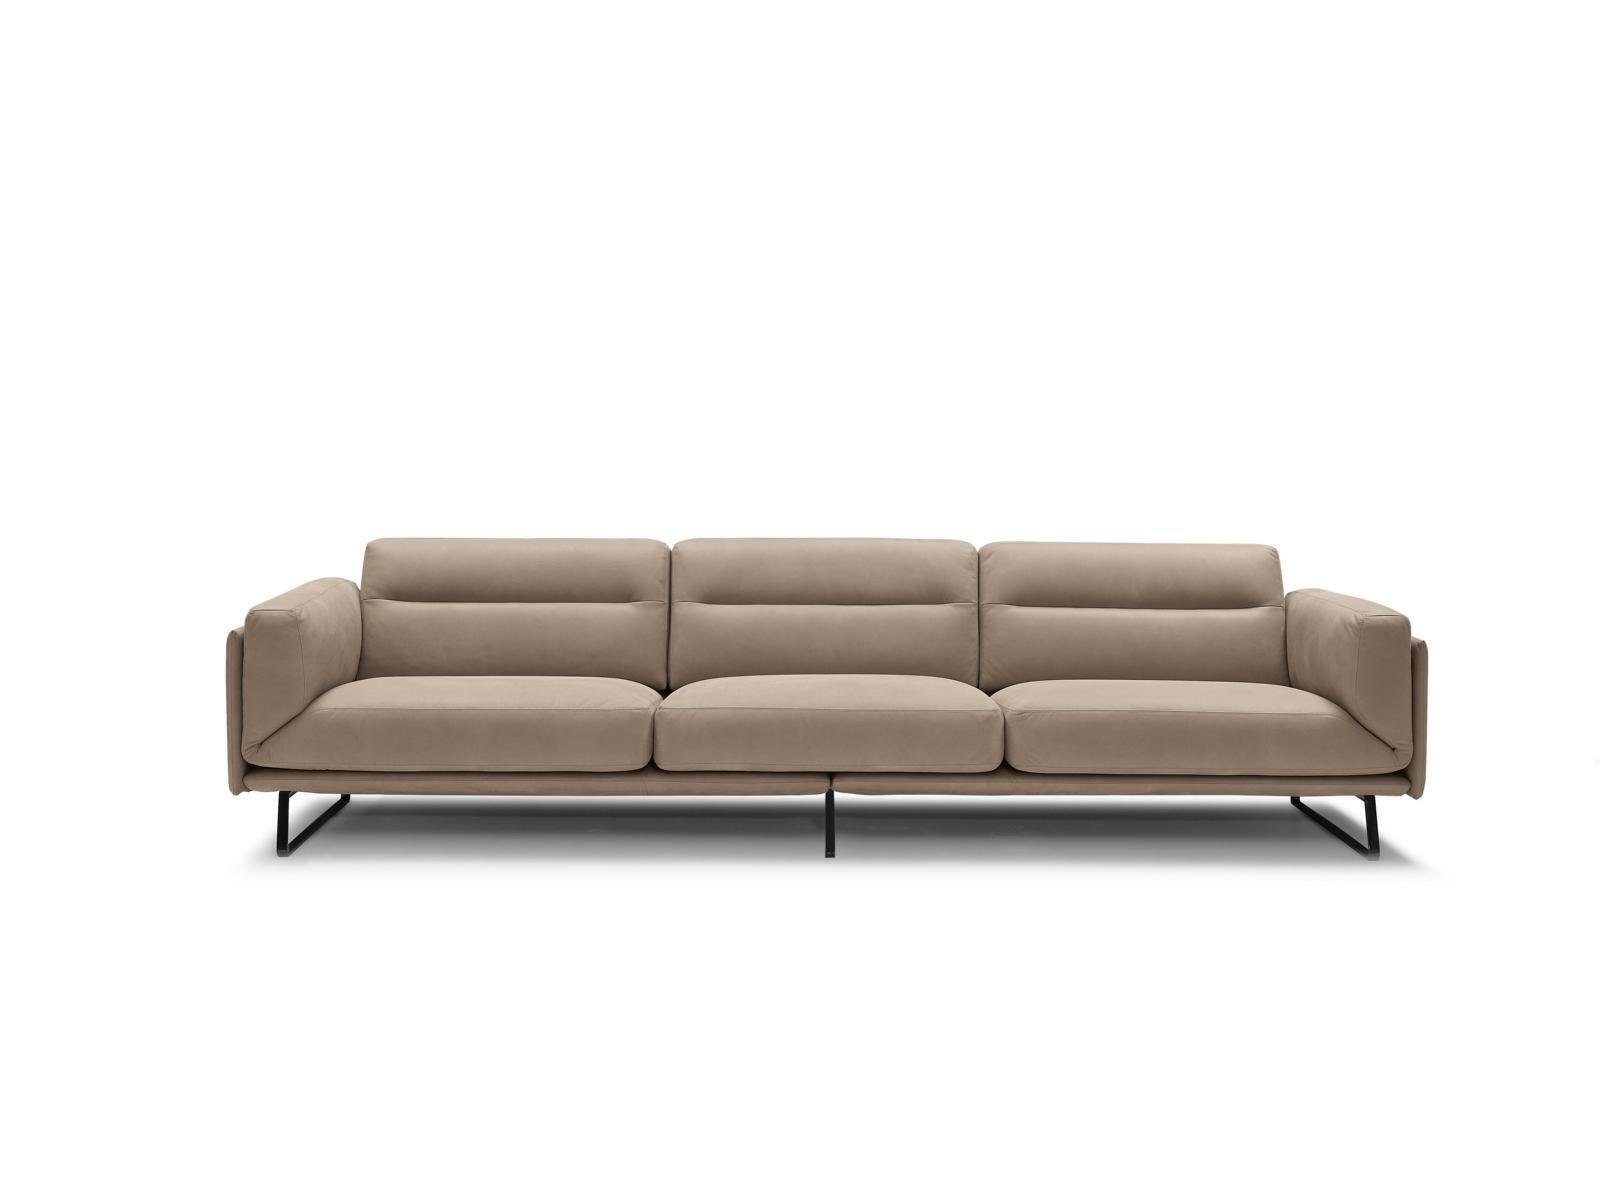 JVmoebel 4-Sitzer Sofa 4 Sitzer Ledersofas Luxus Design Couch Beige Polster Viersitzer | Einzelsofas